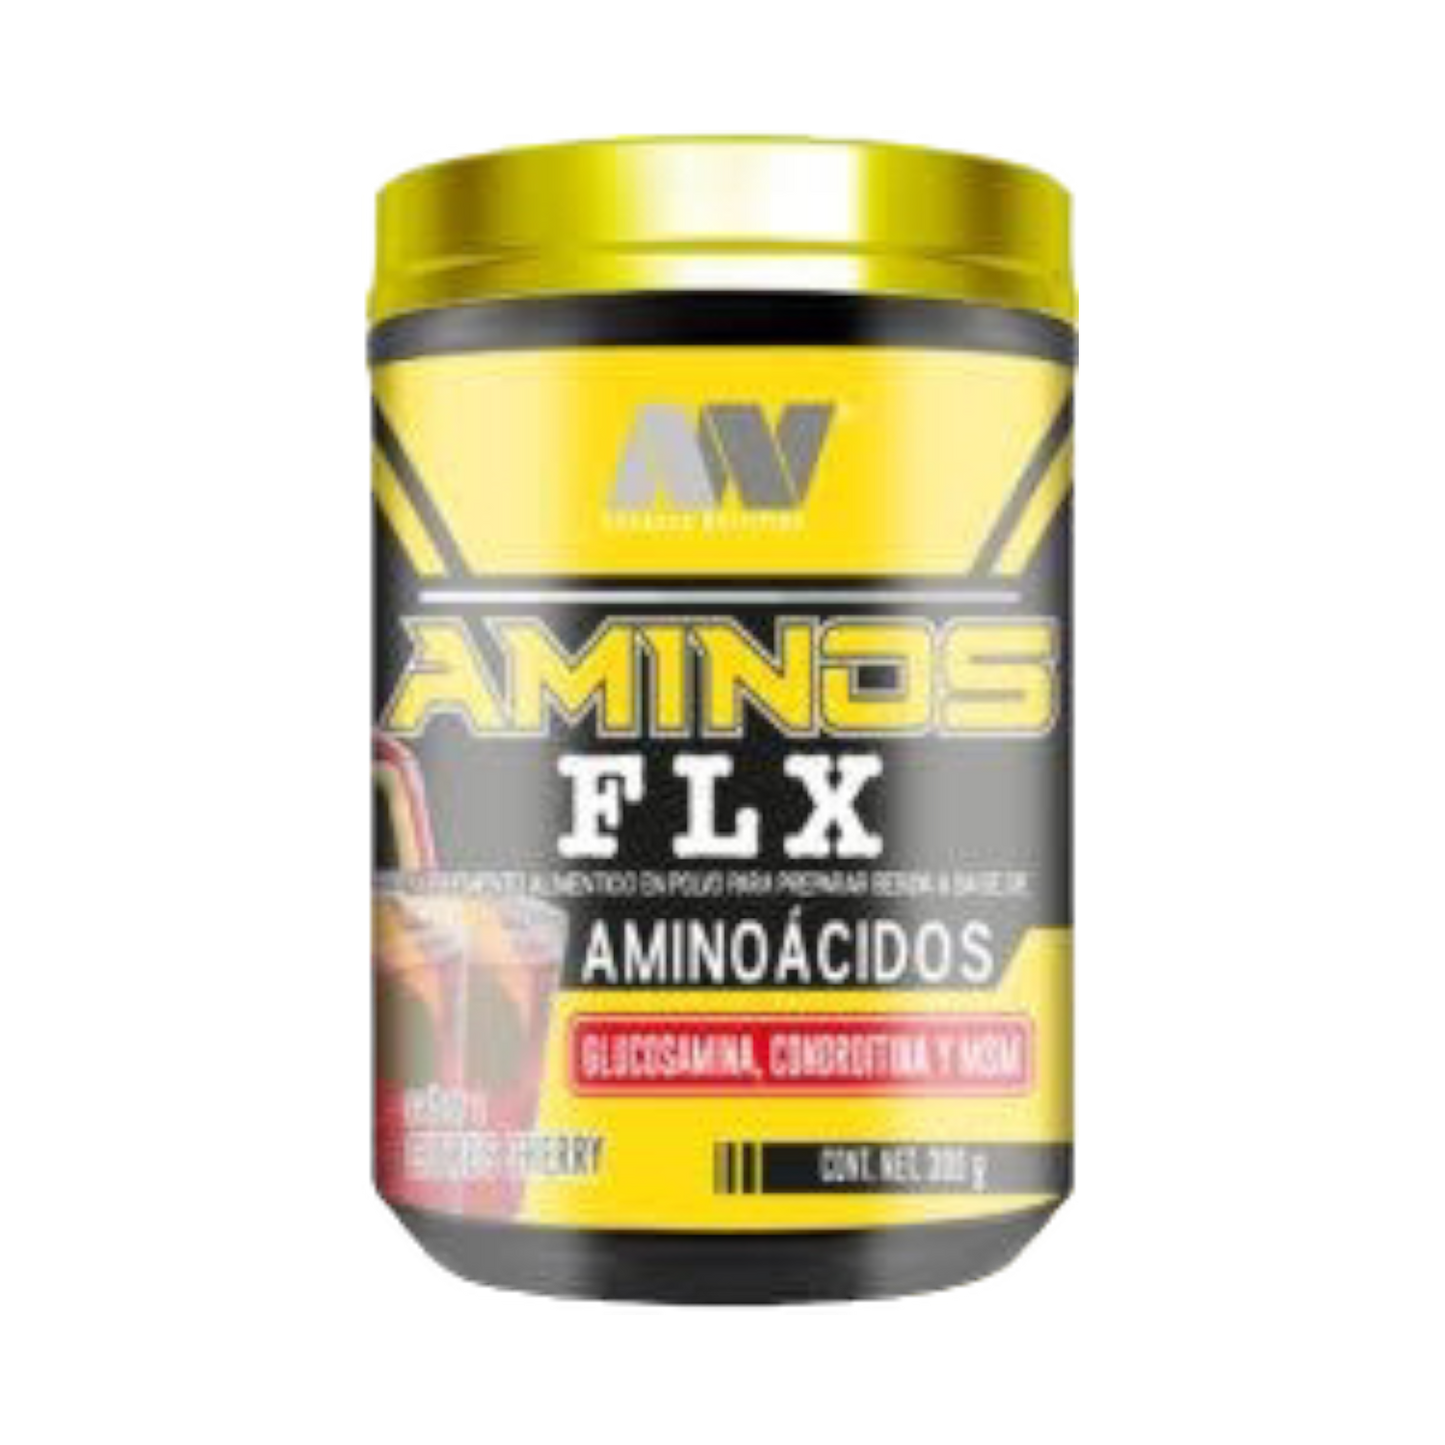 AMINOS FLX ADVACE